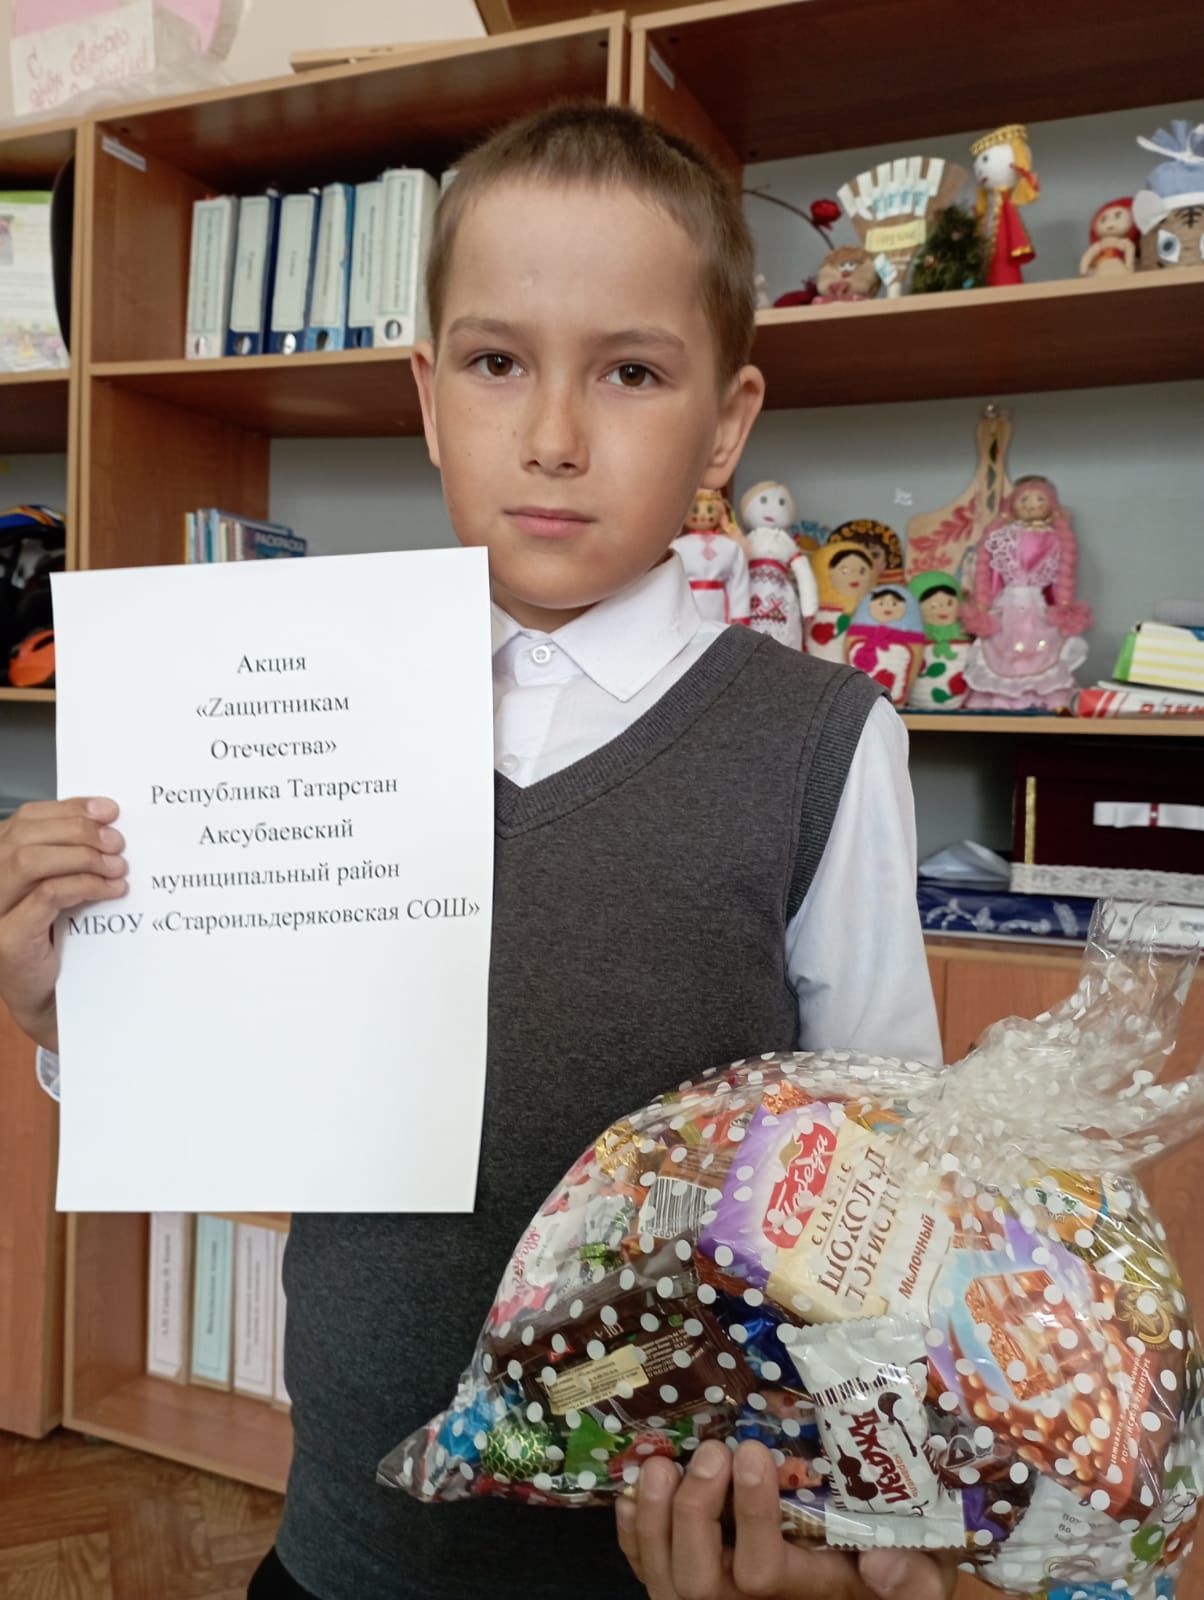 Староильдеряковская школа Аксубаевского района поддержала акцию «Zащитникам Отечества»